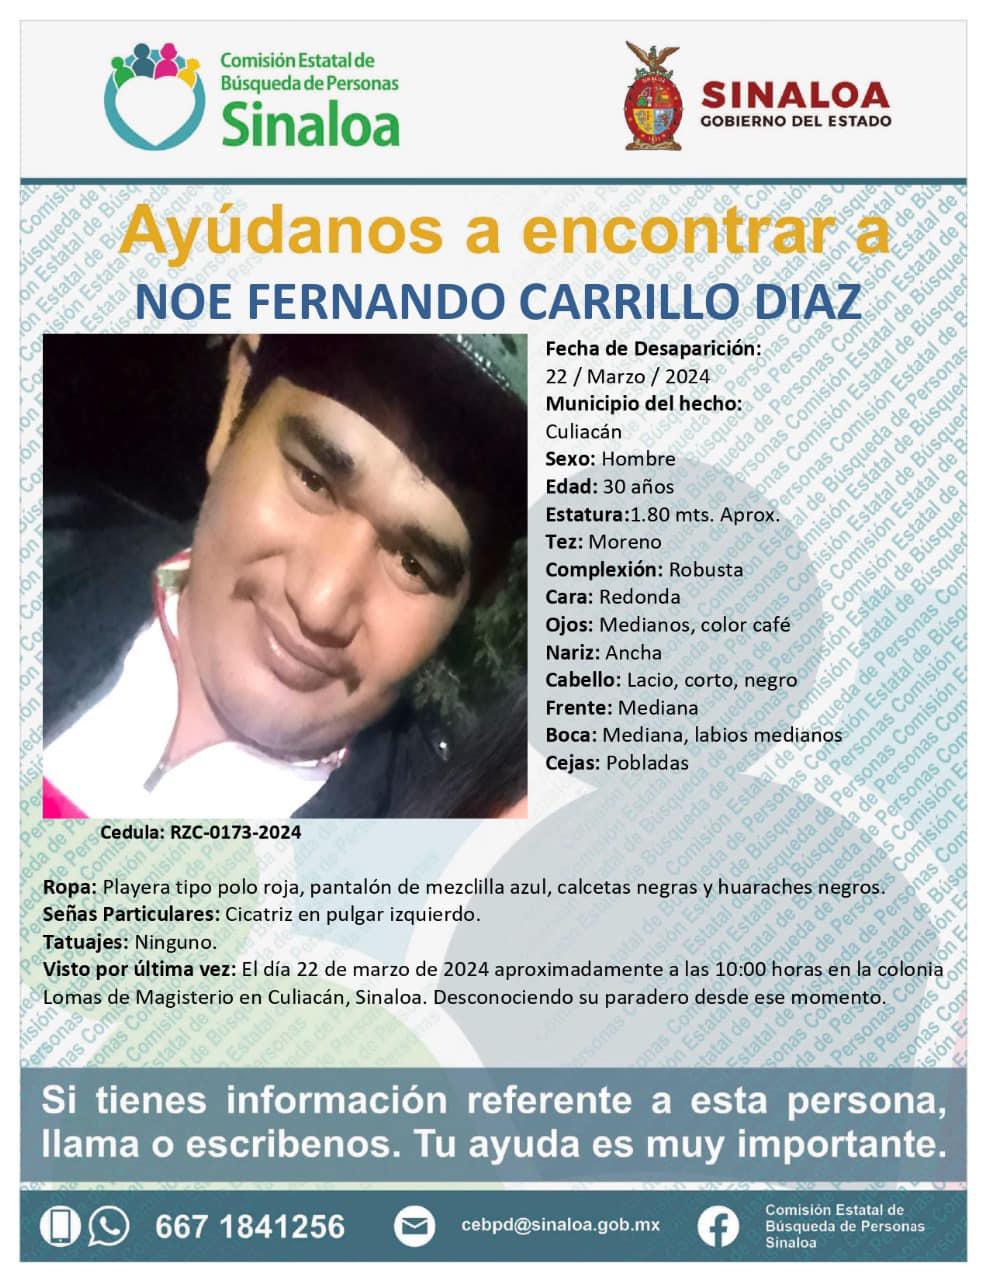 $!Son 11 las fichas que siguen activas de las personas desaparecidas el viernes 22 de marzo en Sinaloa